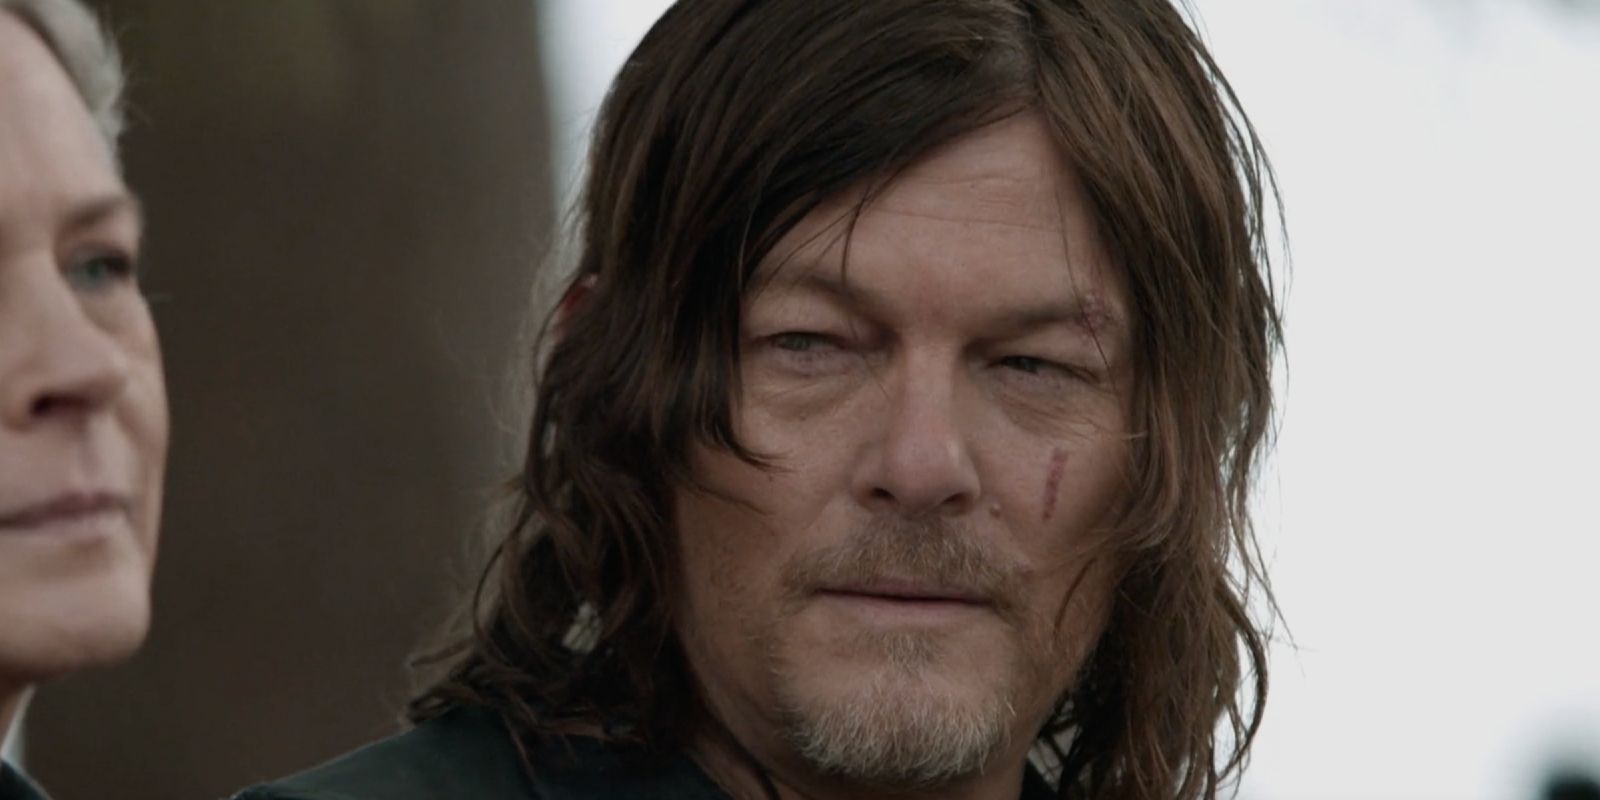 “Kind Of A Reset”: Cómo el spin-off de Daryl difiere de The Walking Dead bromeado por Star